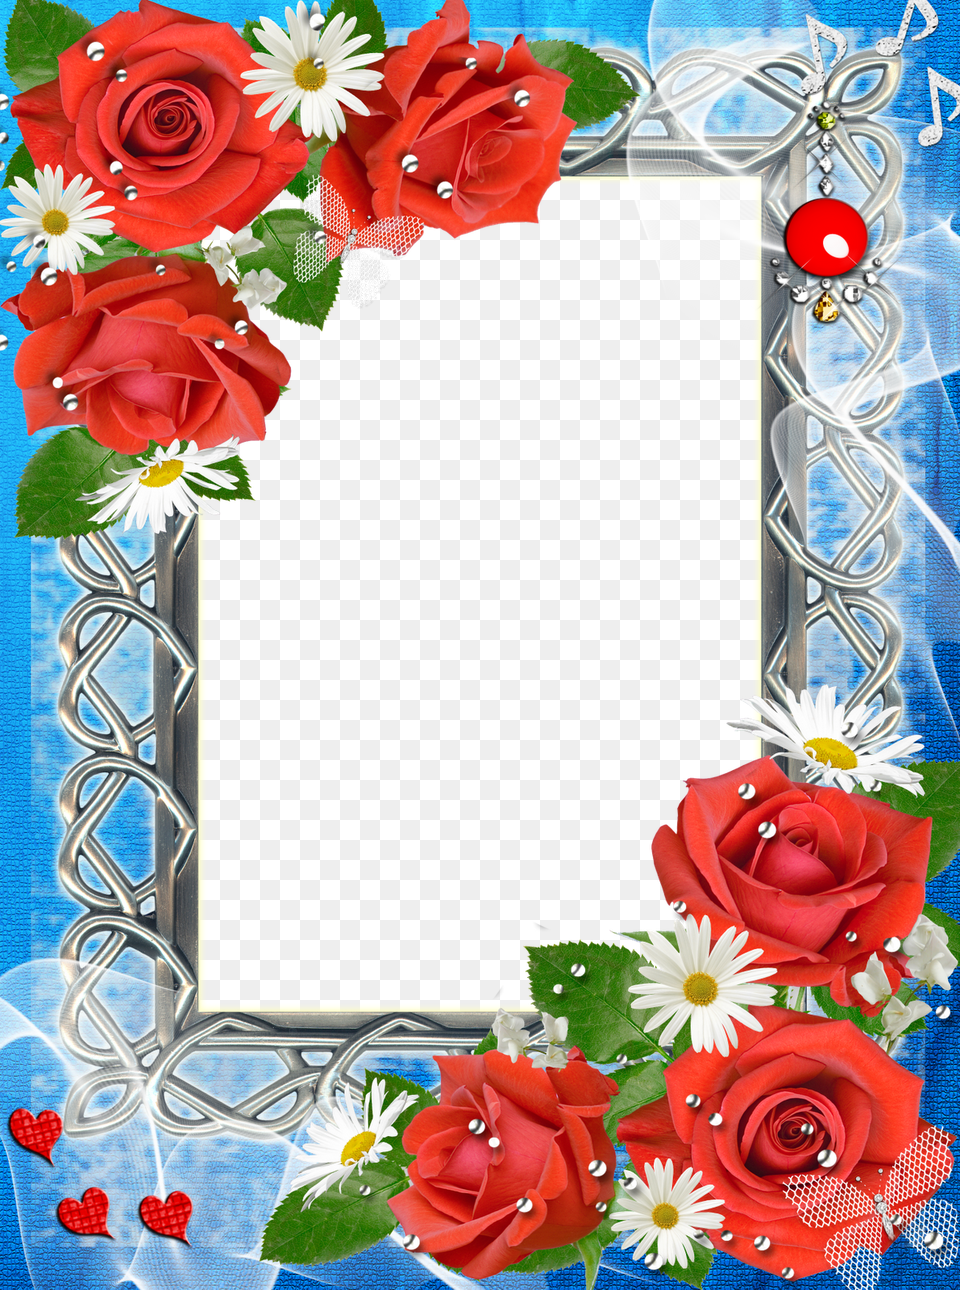 Borders And Frames, Flower, Plant, Rose, Flower Arrangement Png Image